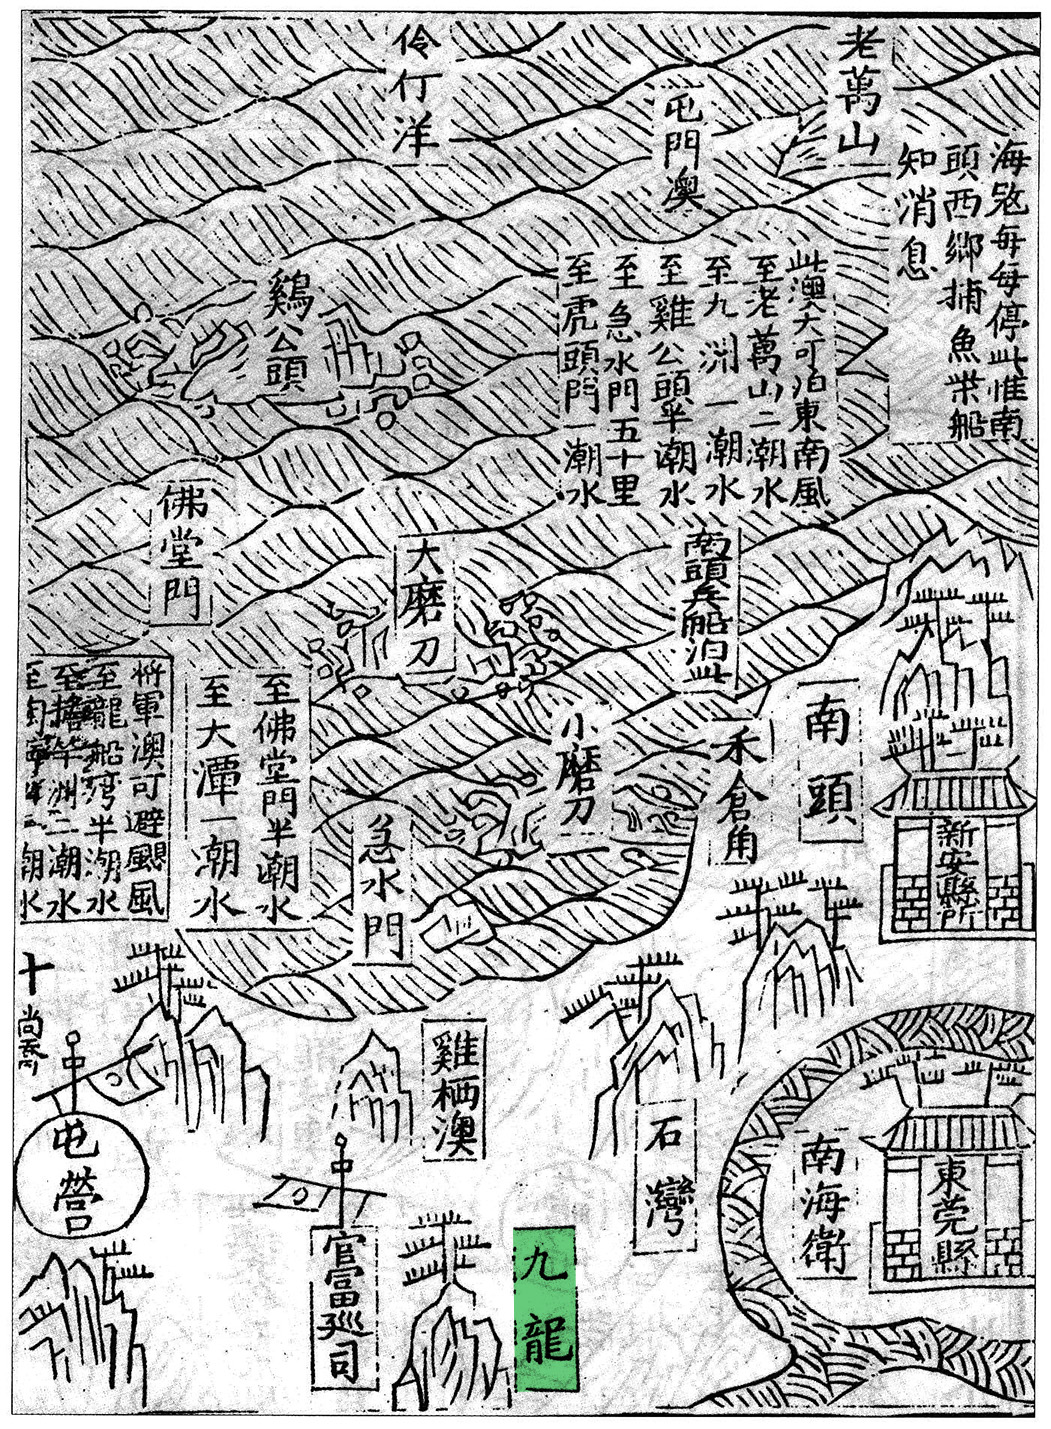 明萬曆九年（1581）應檟編輯、劉堯誨重修的《蒼梧總督軍門志》中的《全廣海圖》標注有「九龍」的地名，是目前發現最早標示「九龍」一名的古地圖。